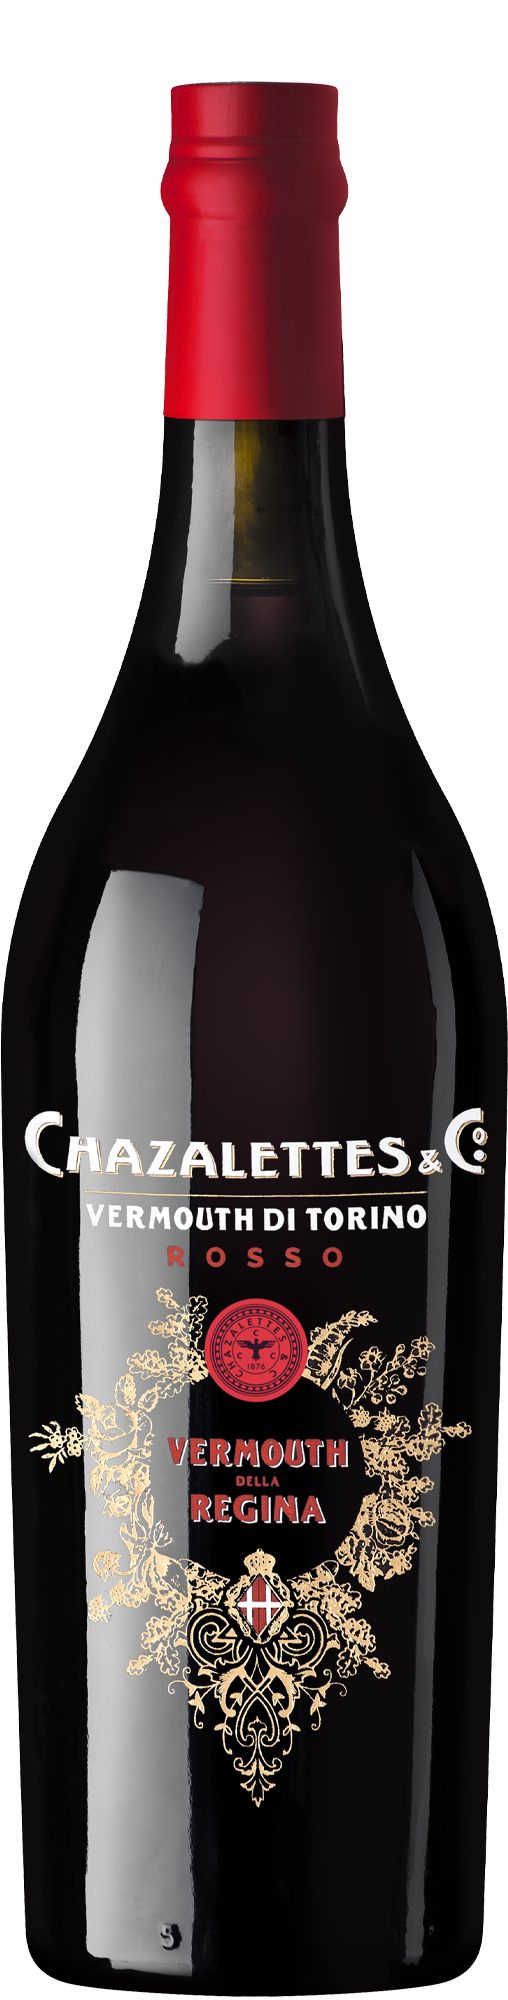 Chazalettes & Co. Vermouth de Torino Rosso (750ml)